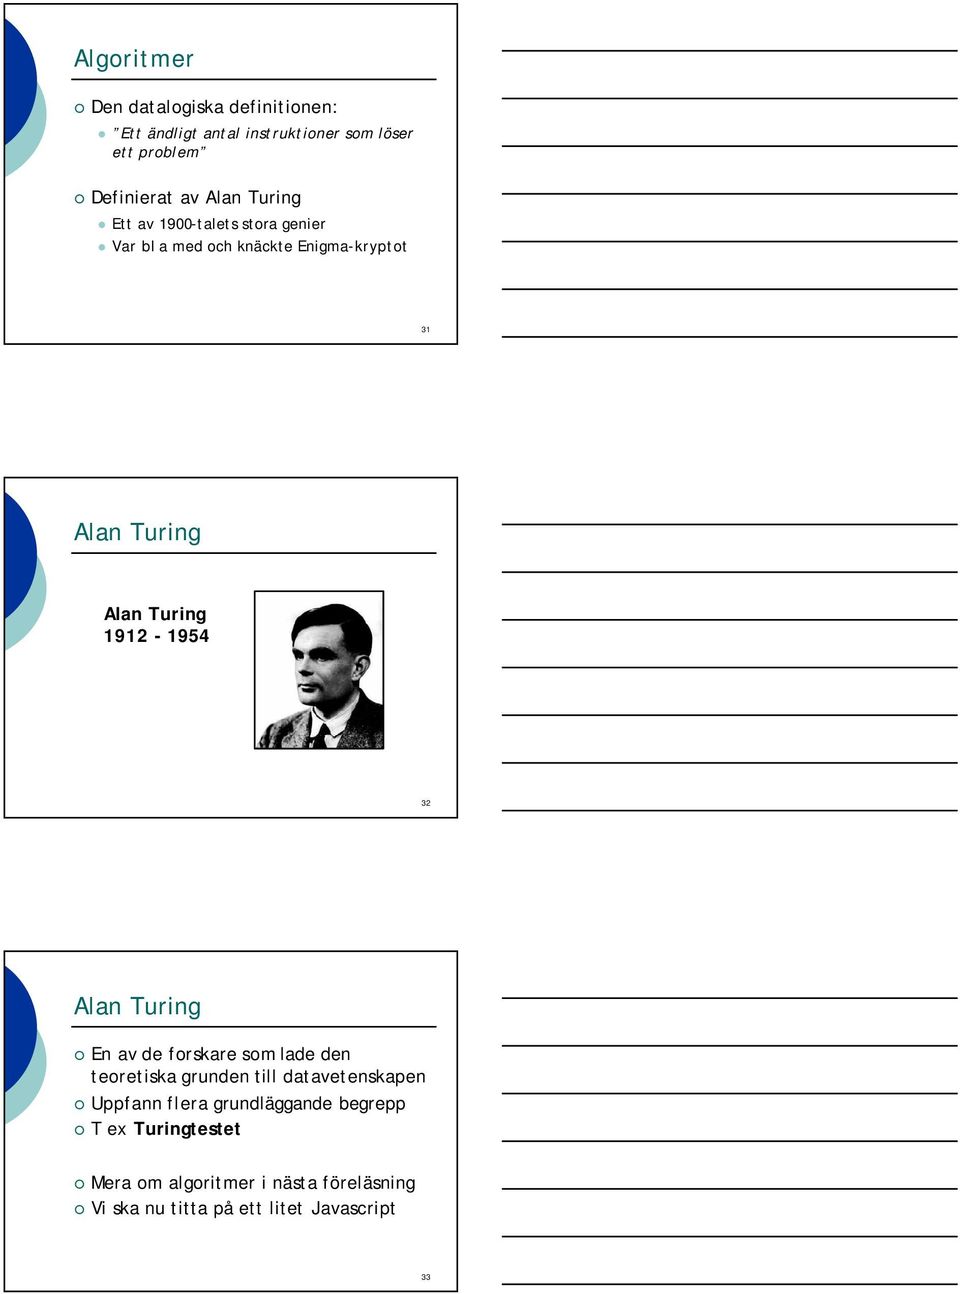 1912-1954 32 Alan Turing En av de forskare som lade den teoretiska grunden till datavetenskapen Uppfann flera